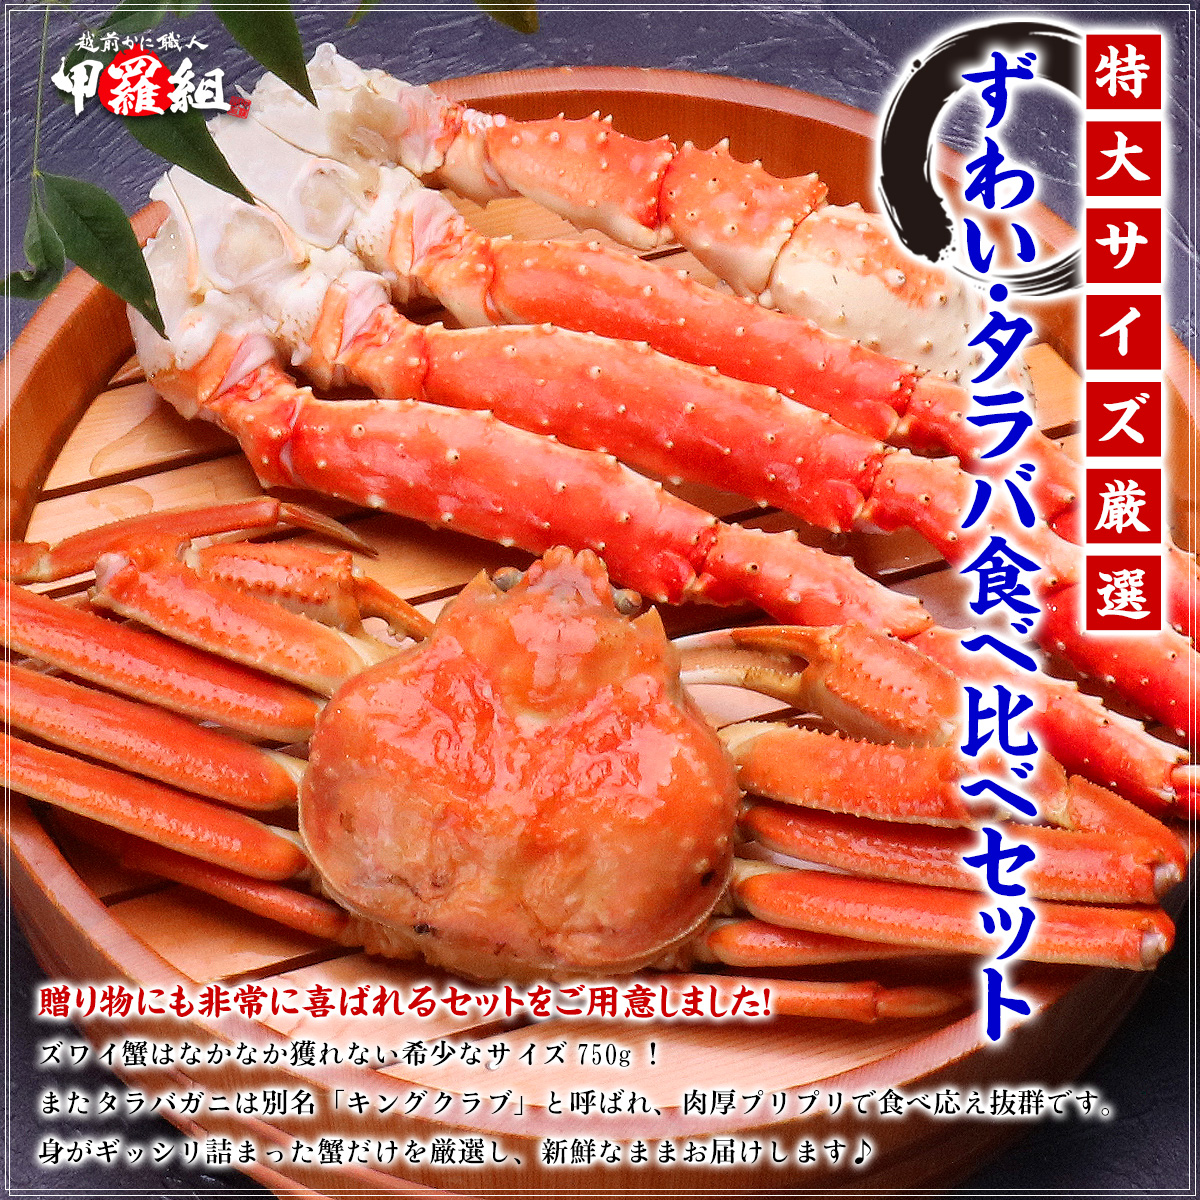 タラバ蟹・ずわい蟹食べ比べセット (ずわい蟹 たらば蟹) かに カニ 蟹 ギフト 二大蟹 送料無料 FF : 220031